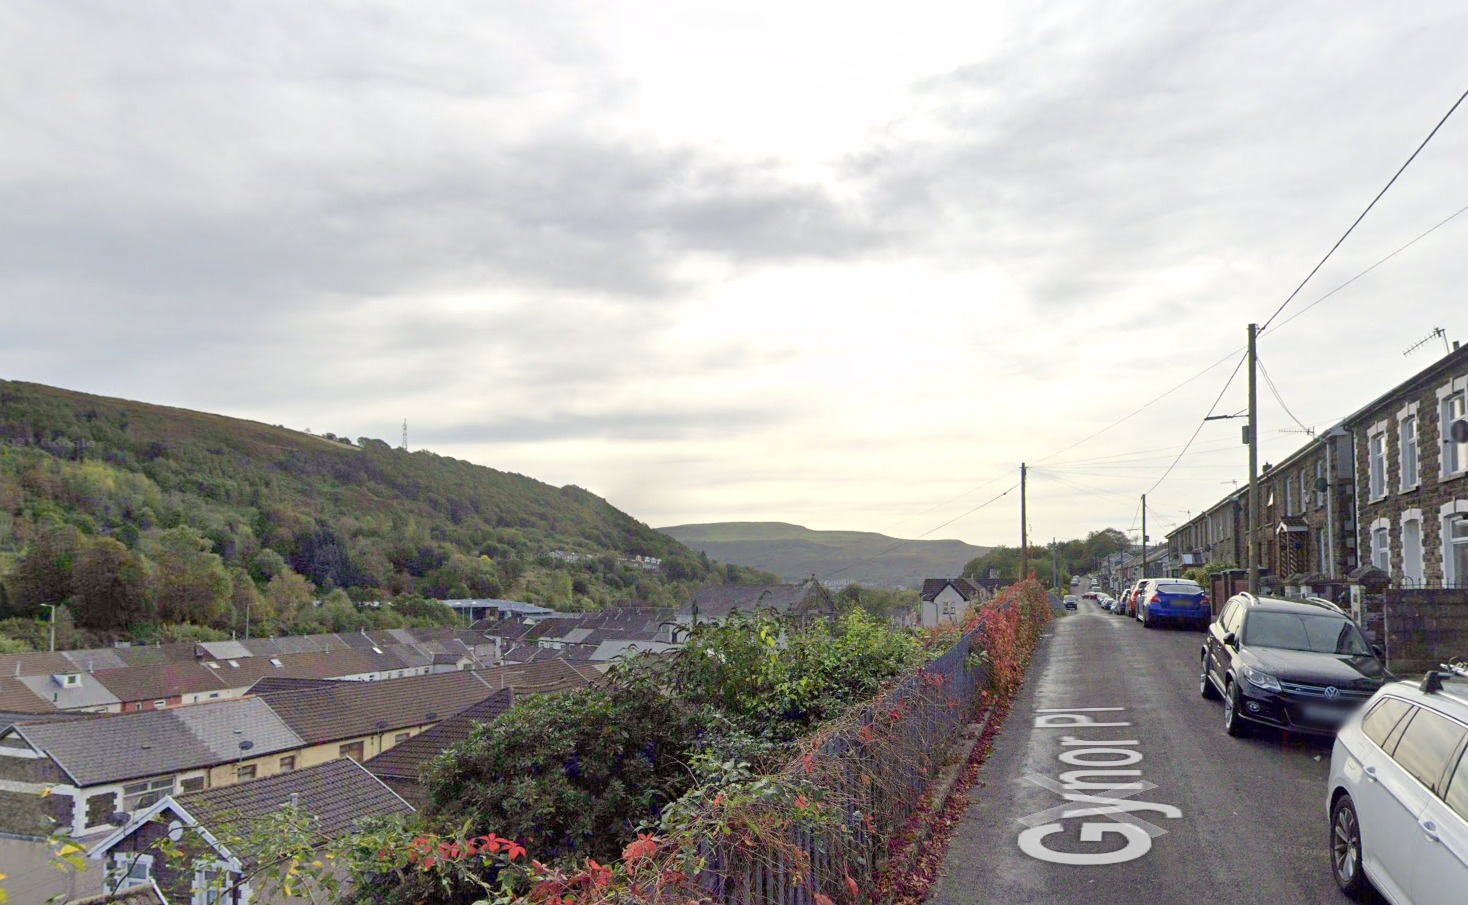 Concerns raised over HMO plans in Ynyshir, Rhondda 